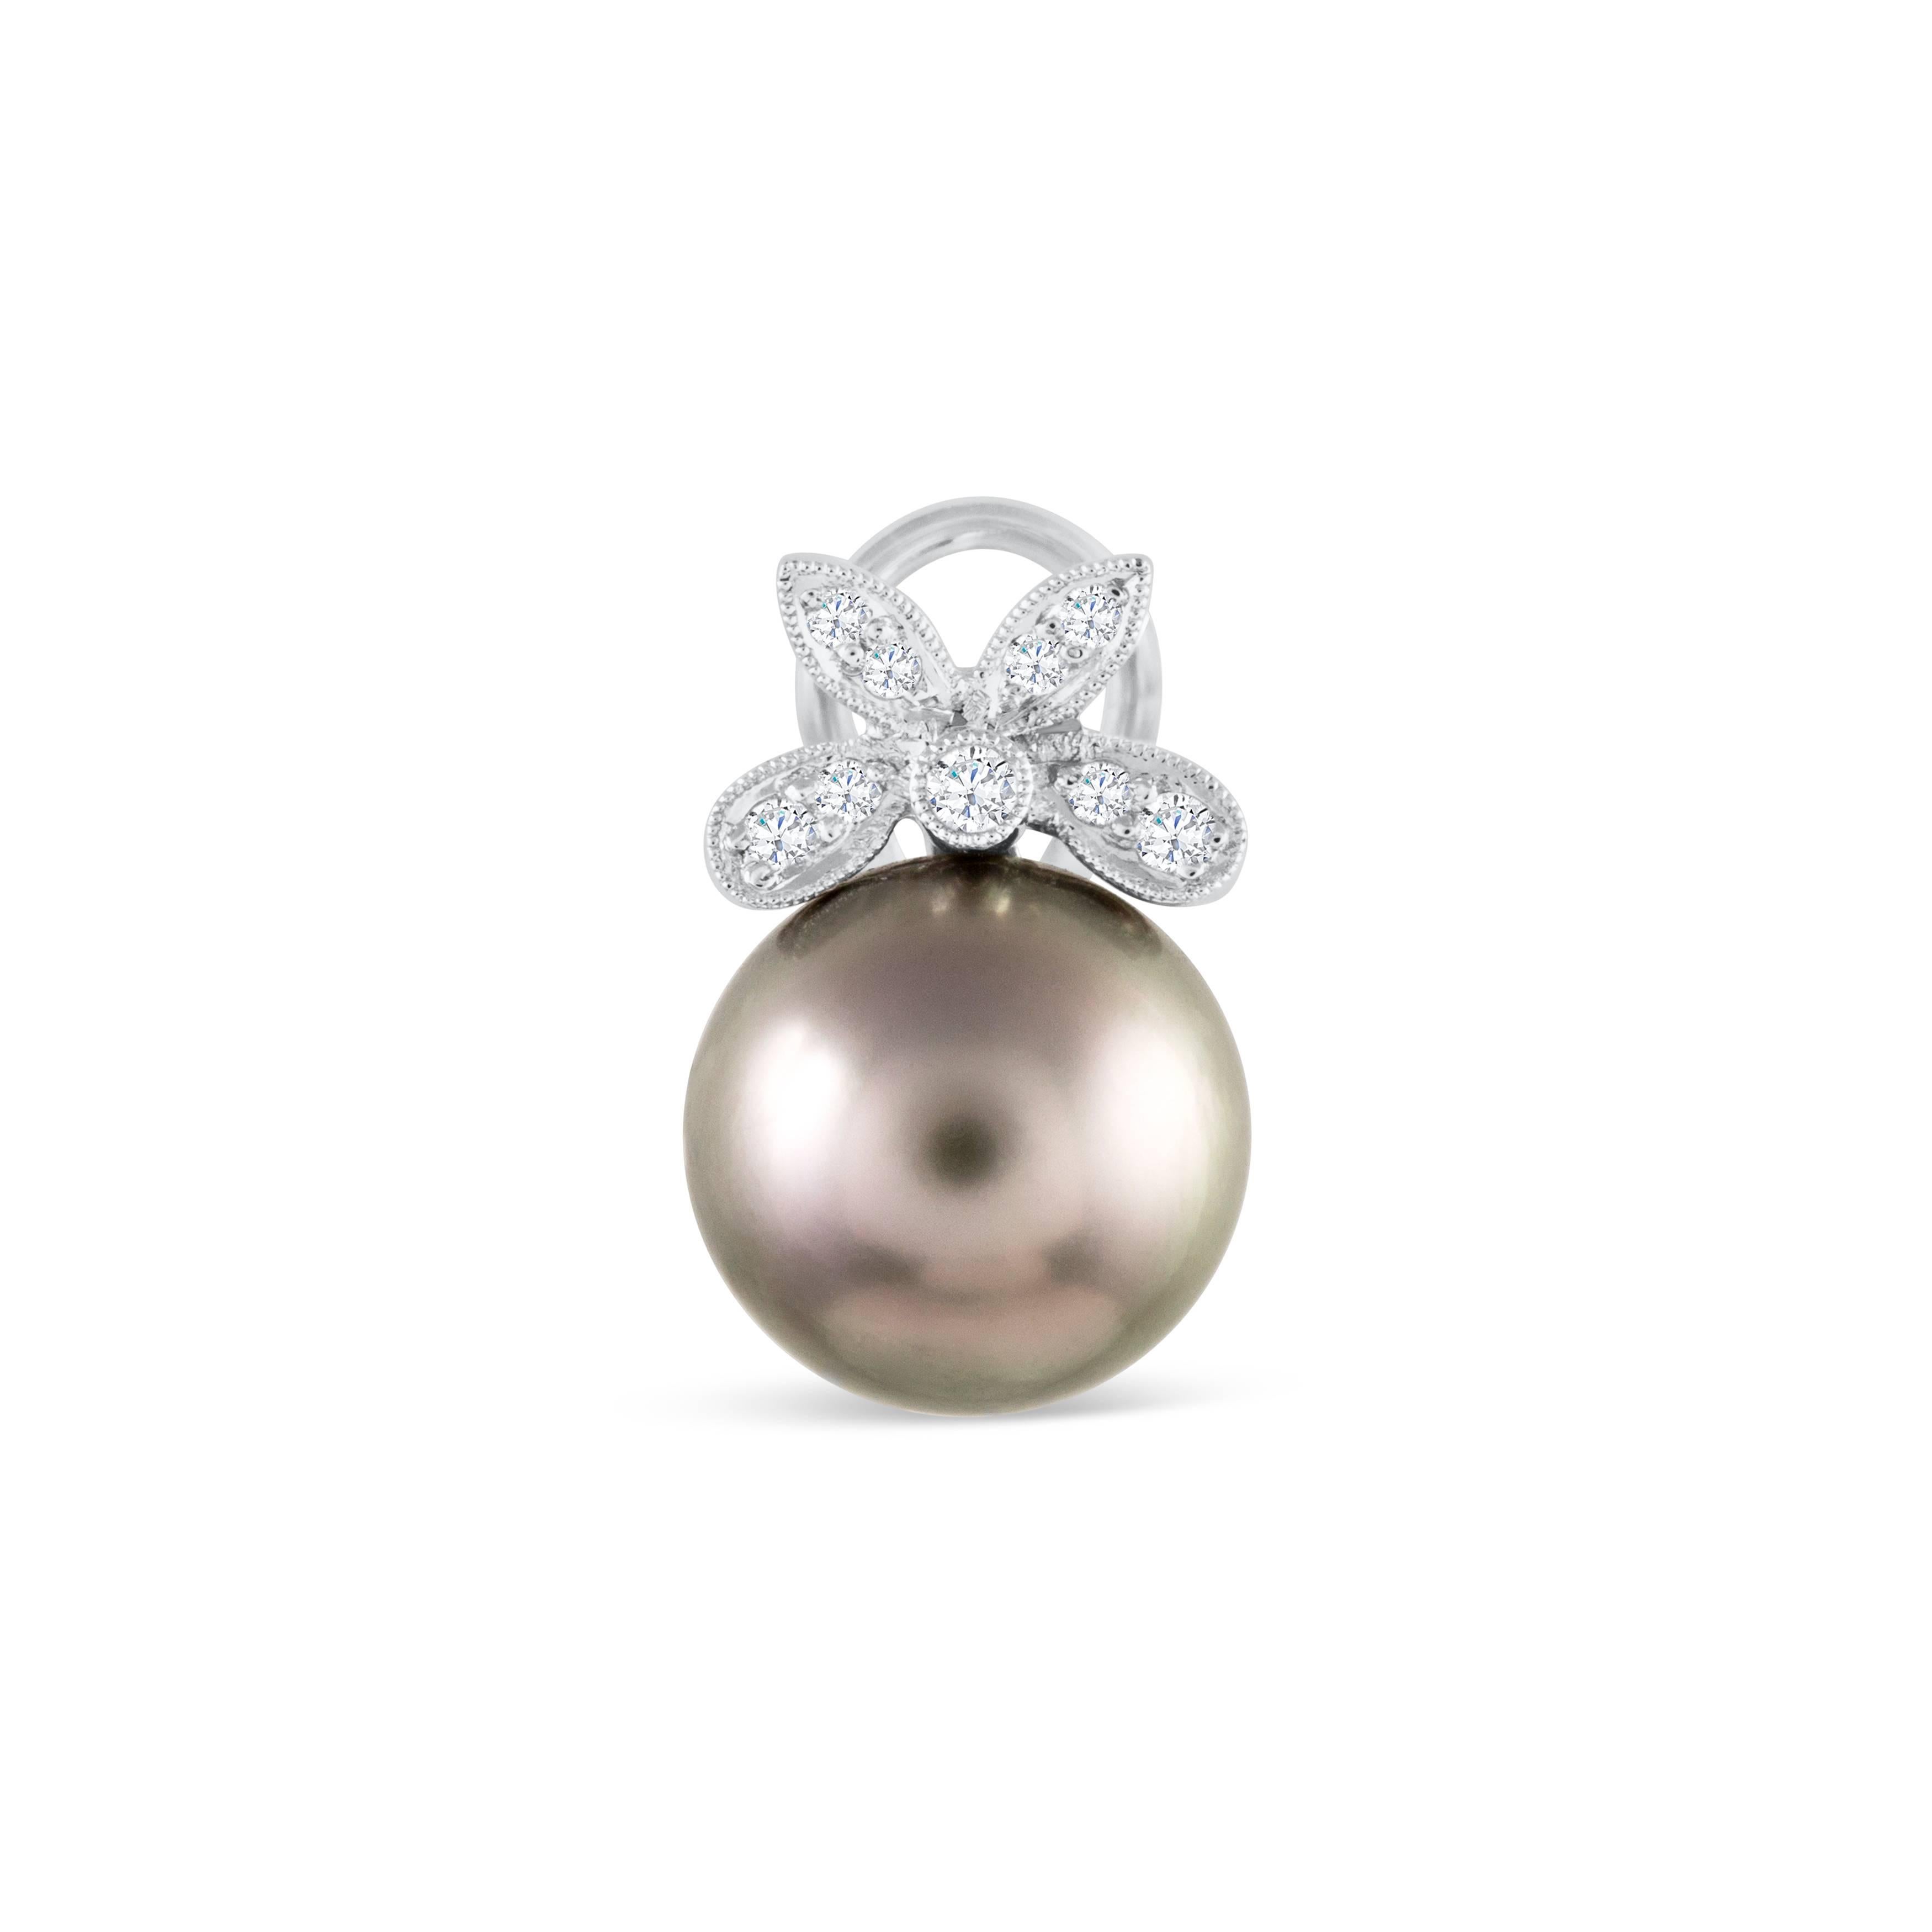 Raffinierte und elegante Ohrringe in einem schimmernden Omega-Clip-Design. Die 12 mm großen schwarzen Tahiti-Perlen werden von funkelnden Diamanten akzentuiert, die in einer Schleife aus 18 Karat Weißgold angeordnet sind. Zeitlose Stücke für jede